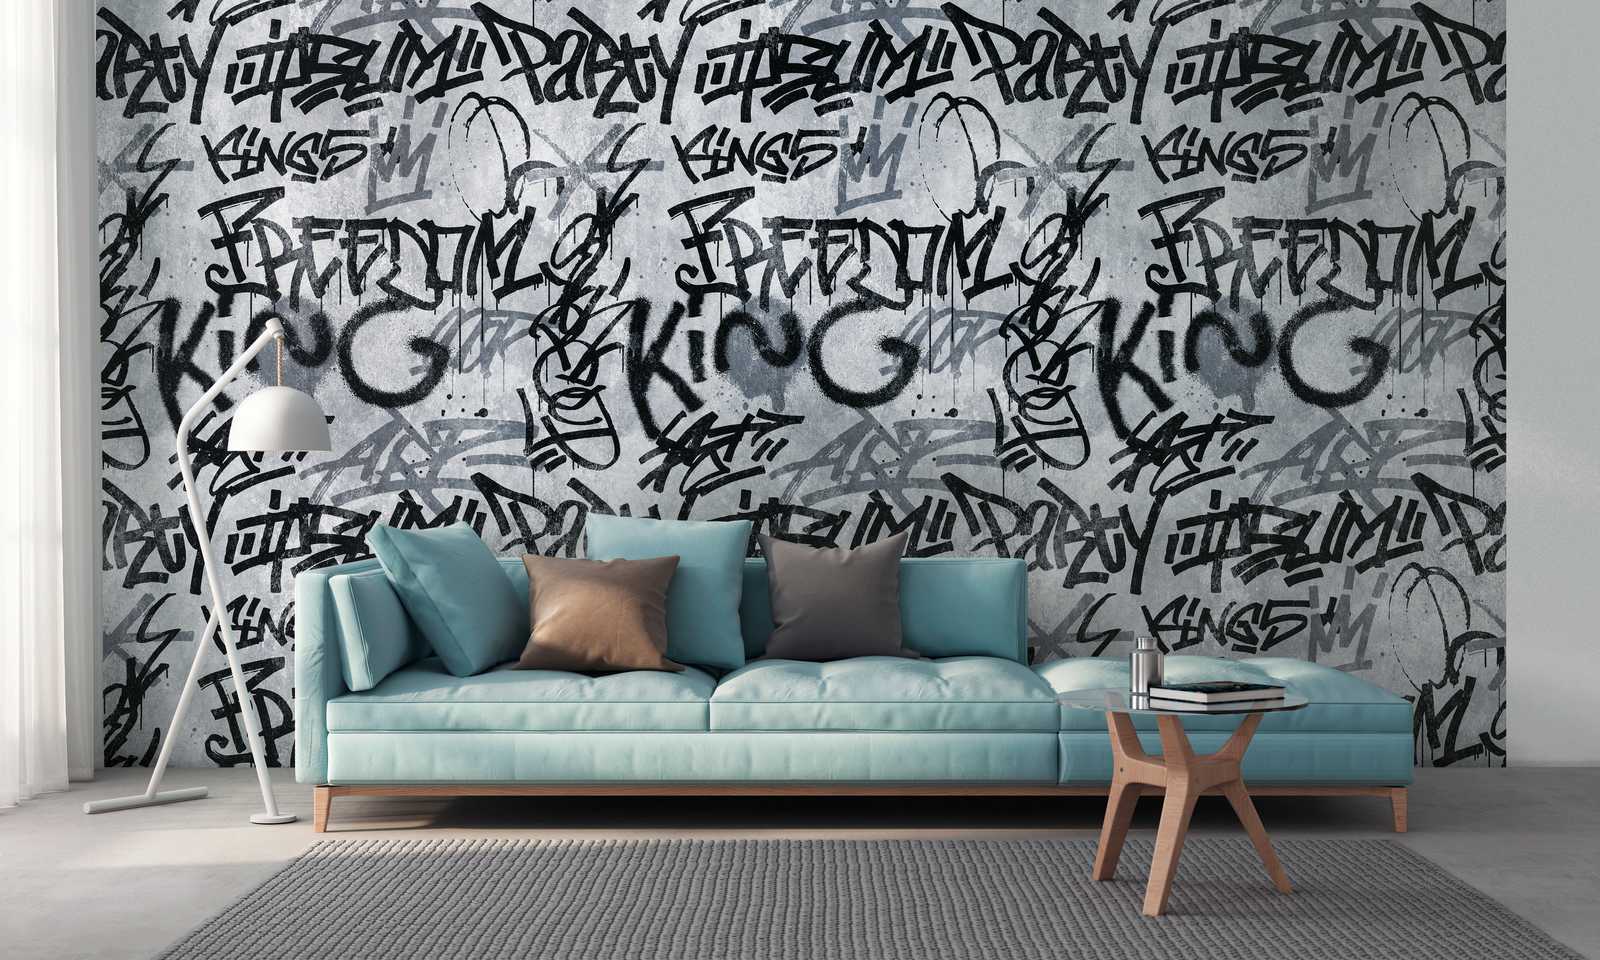             Nouveauté papier peint | papier peint à motifs Graffiti & béton design, gris & urbain
        